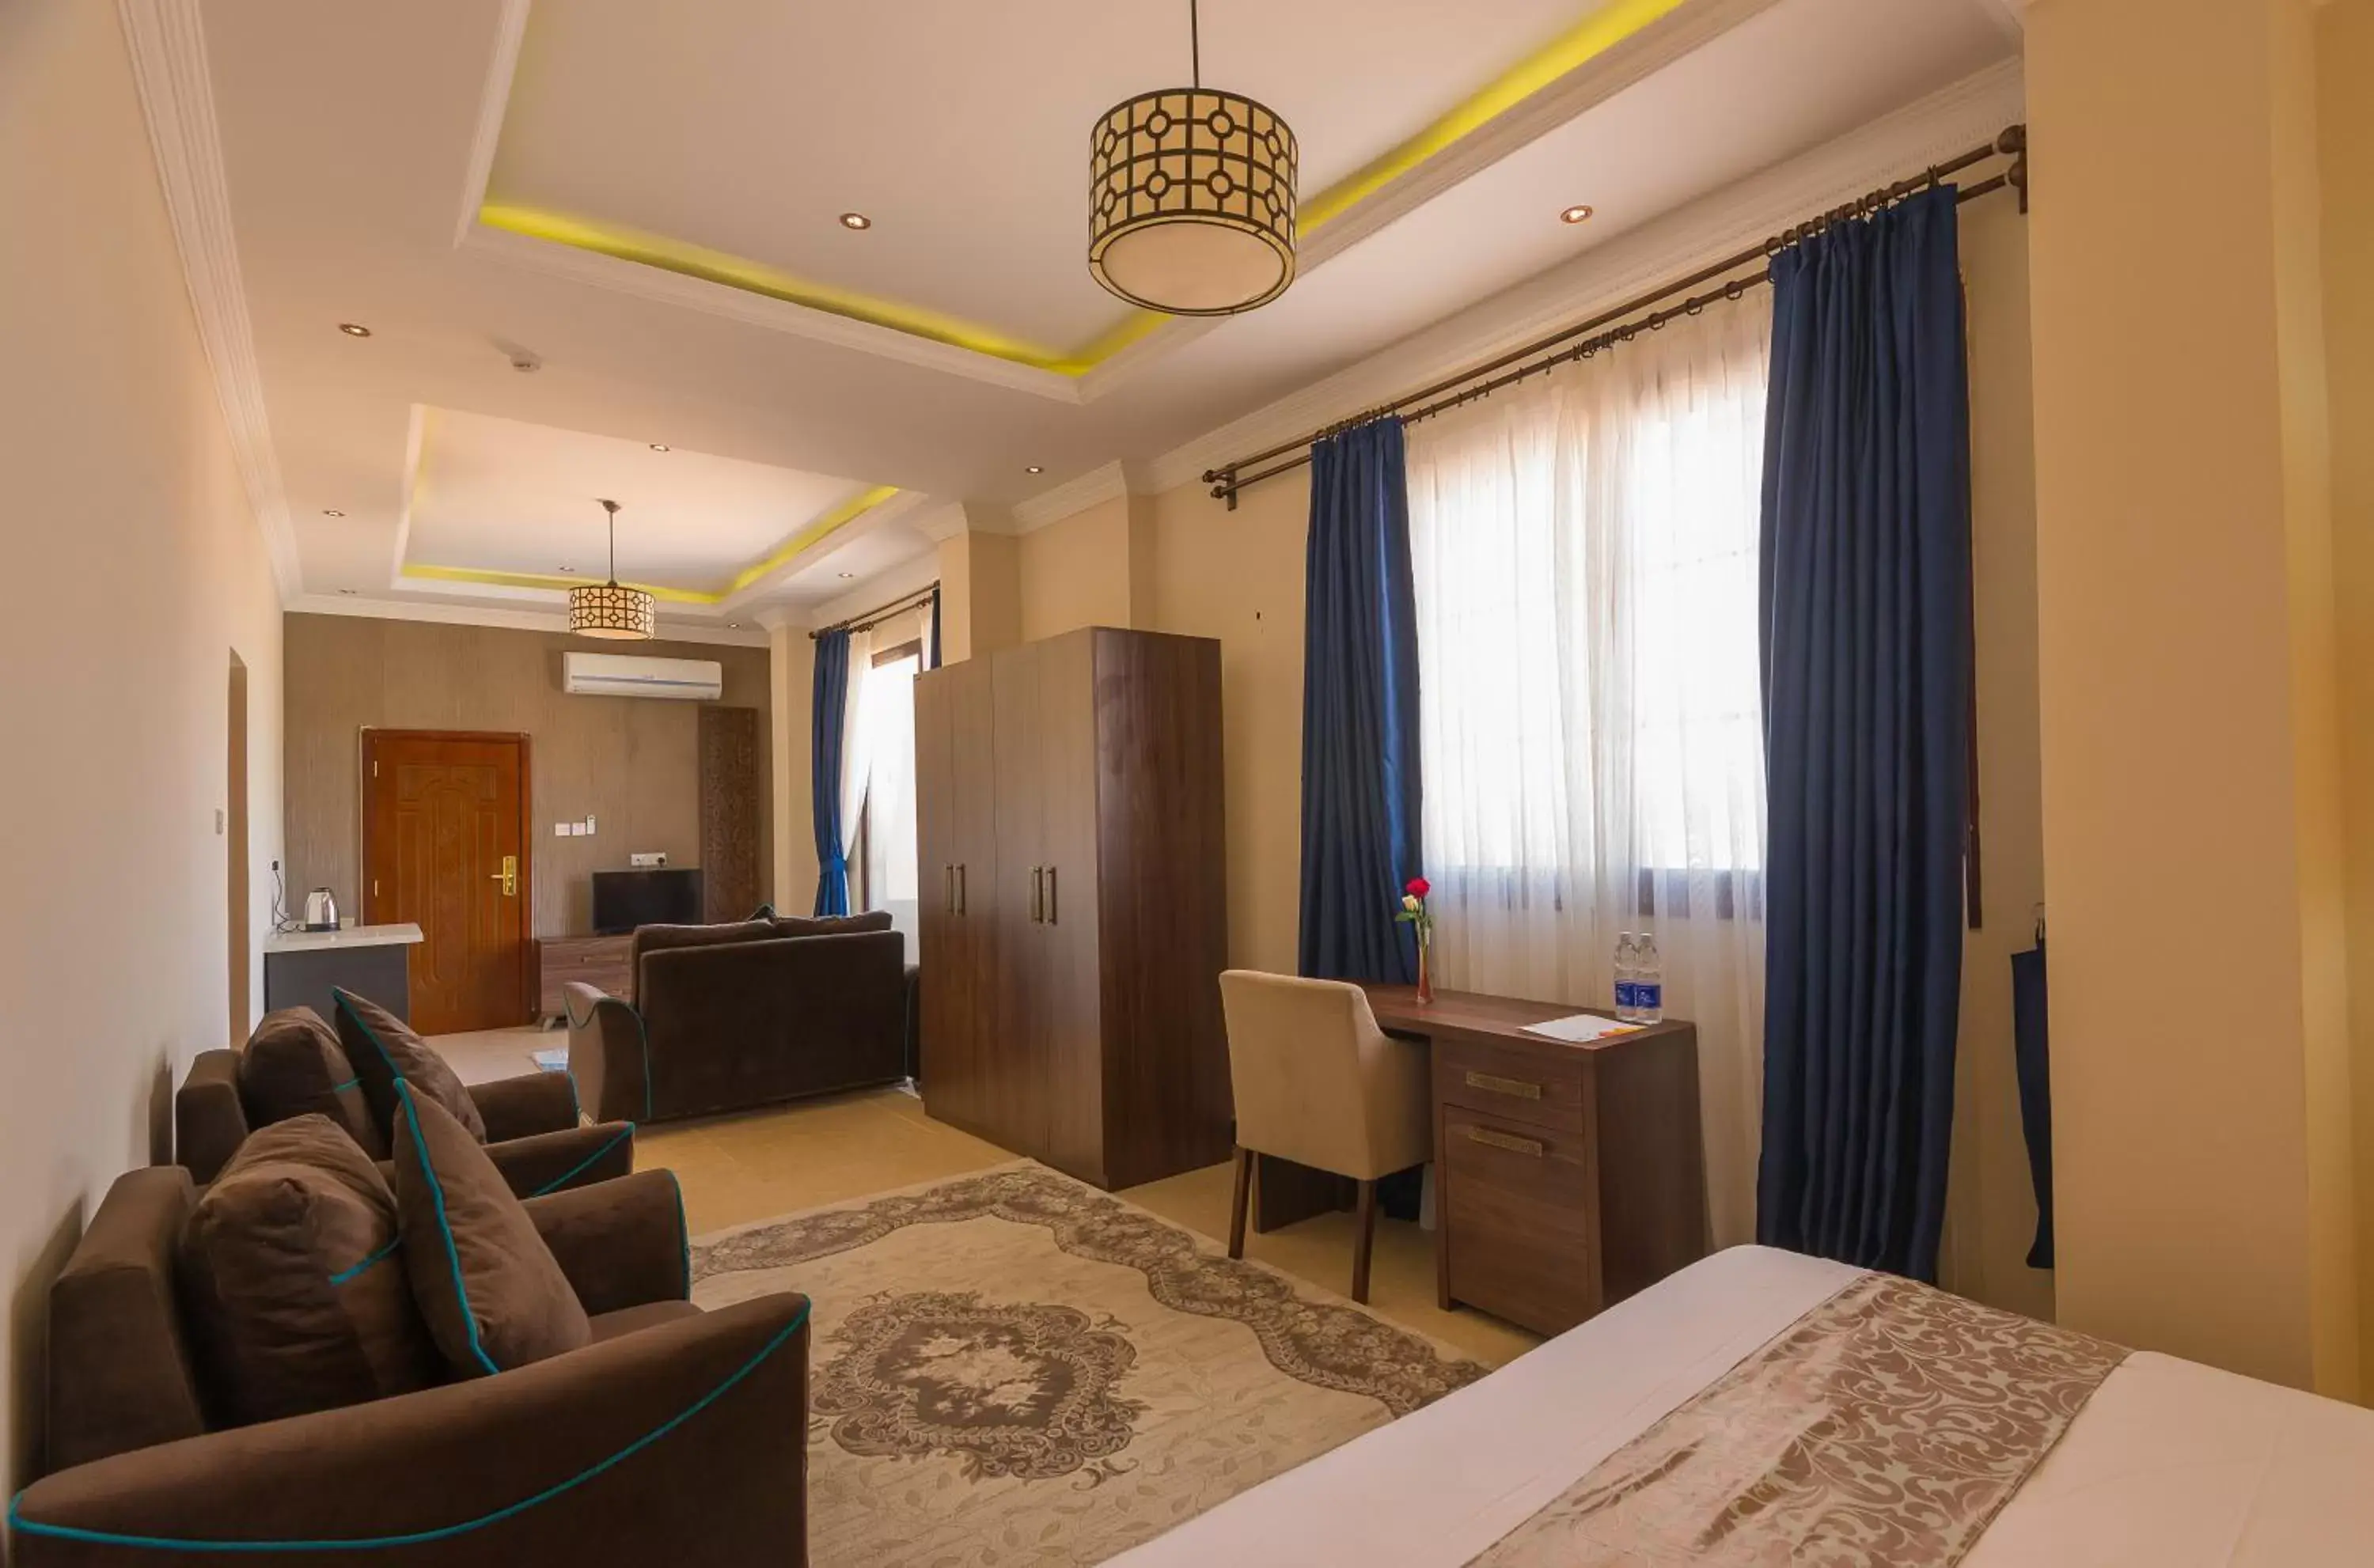 Bedroom, Seating Area in Golden Tulip Zanzibar Resort